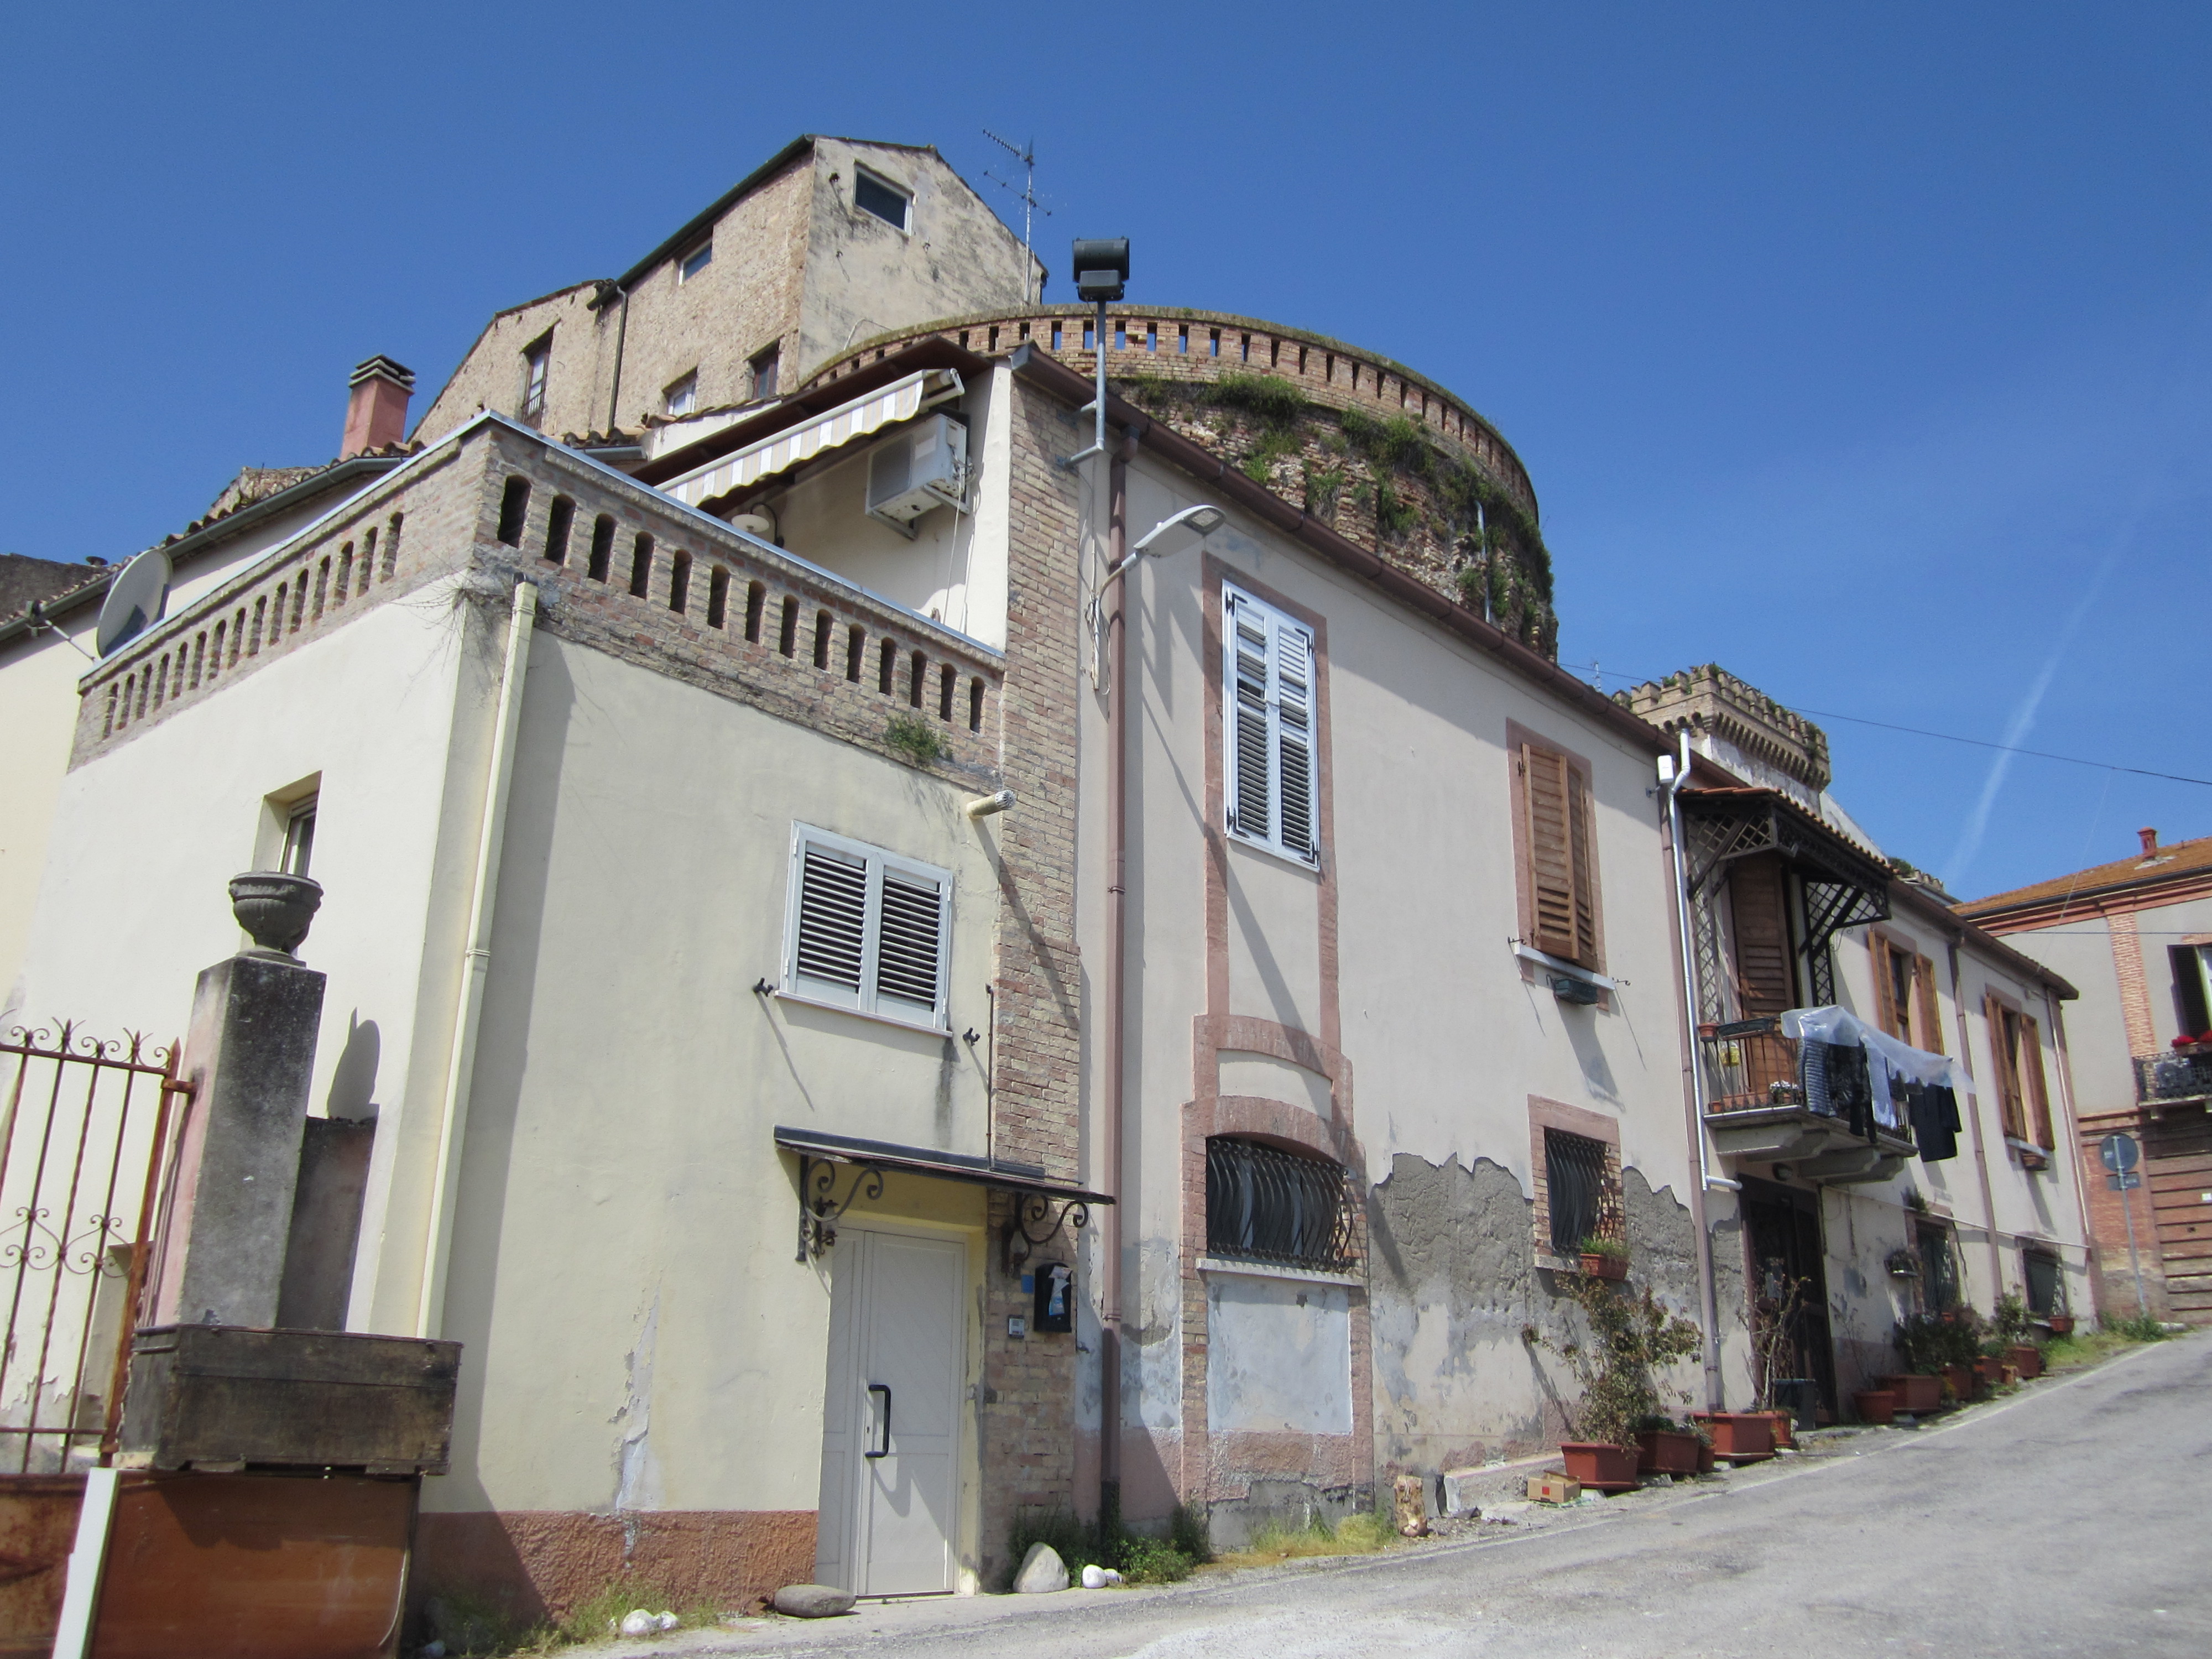 Palazzo Re e Torrione di Porta S. Maria (palazzo, palazzo con torrione) - Giulianova (TE) 